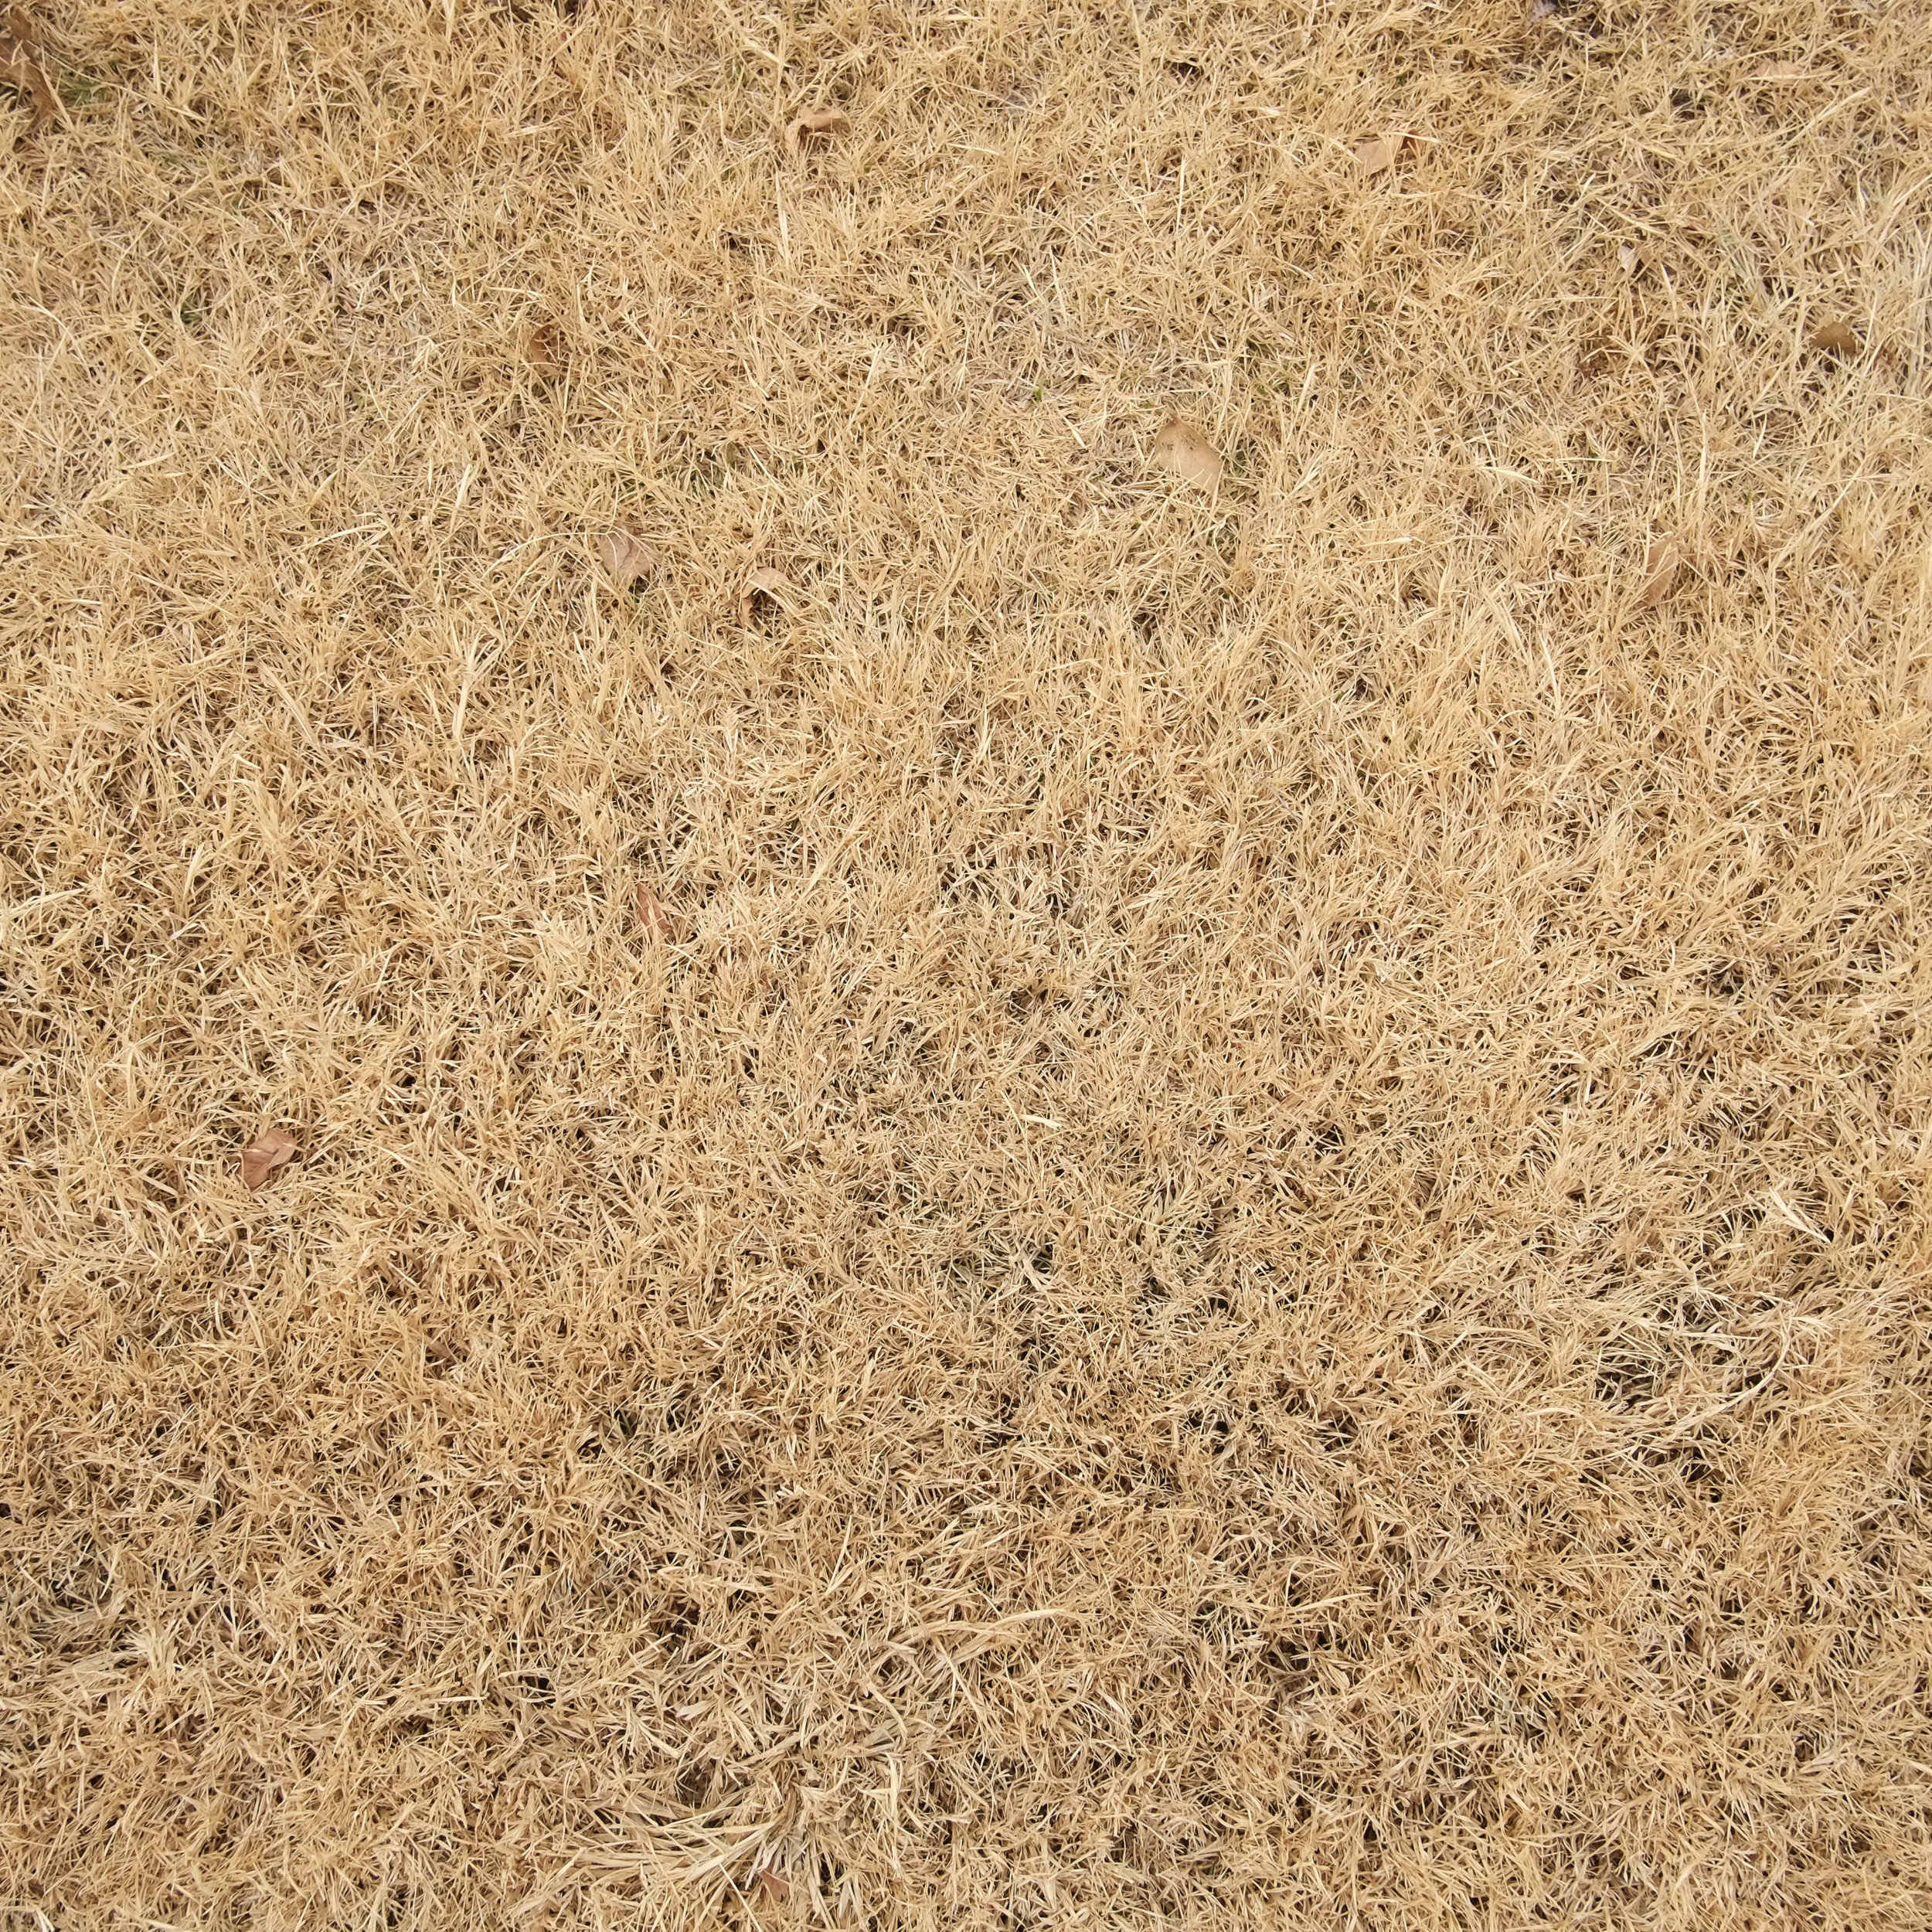 Dry Grass.jpg